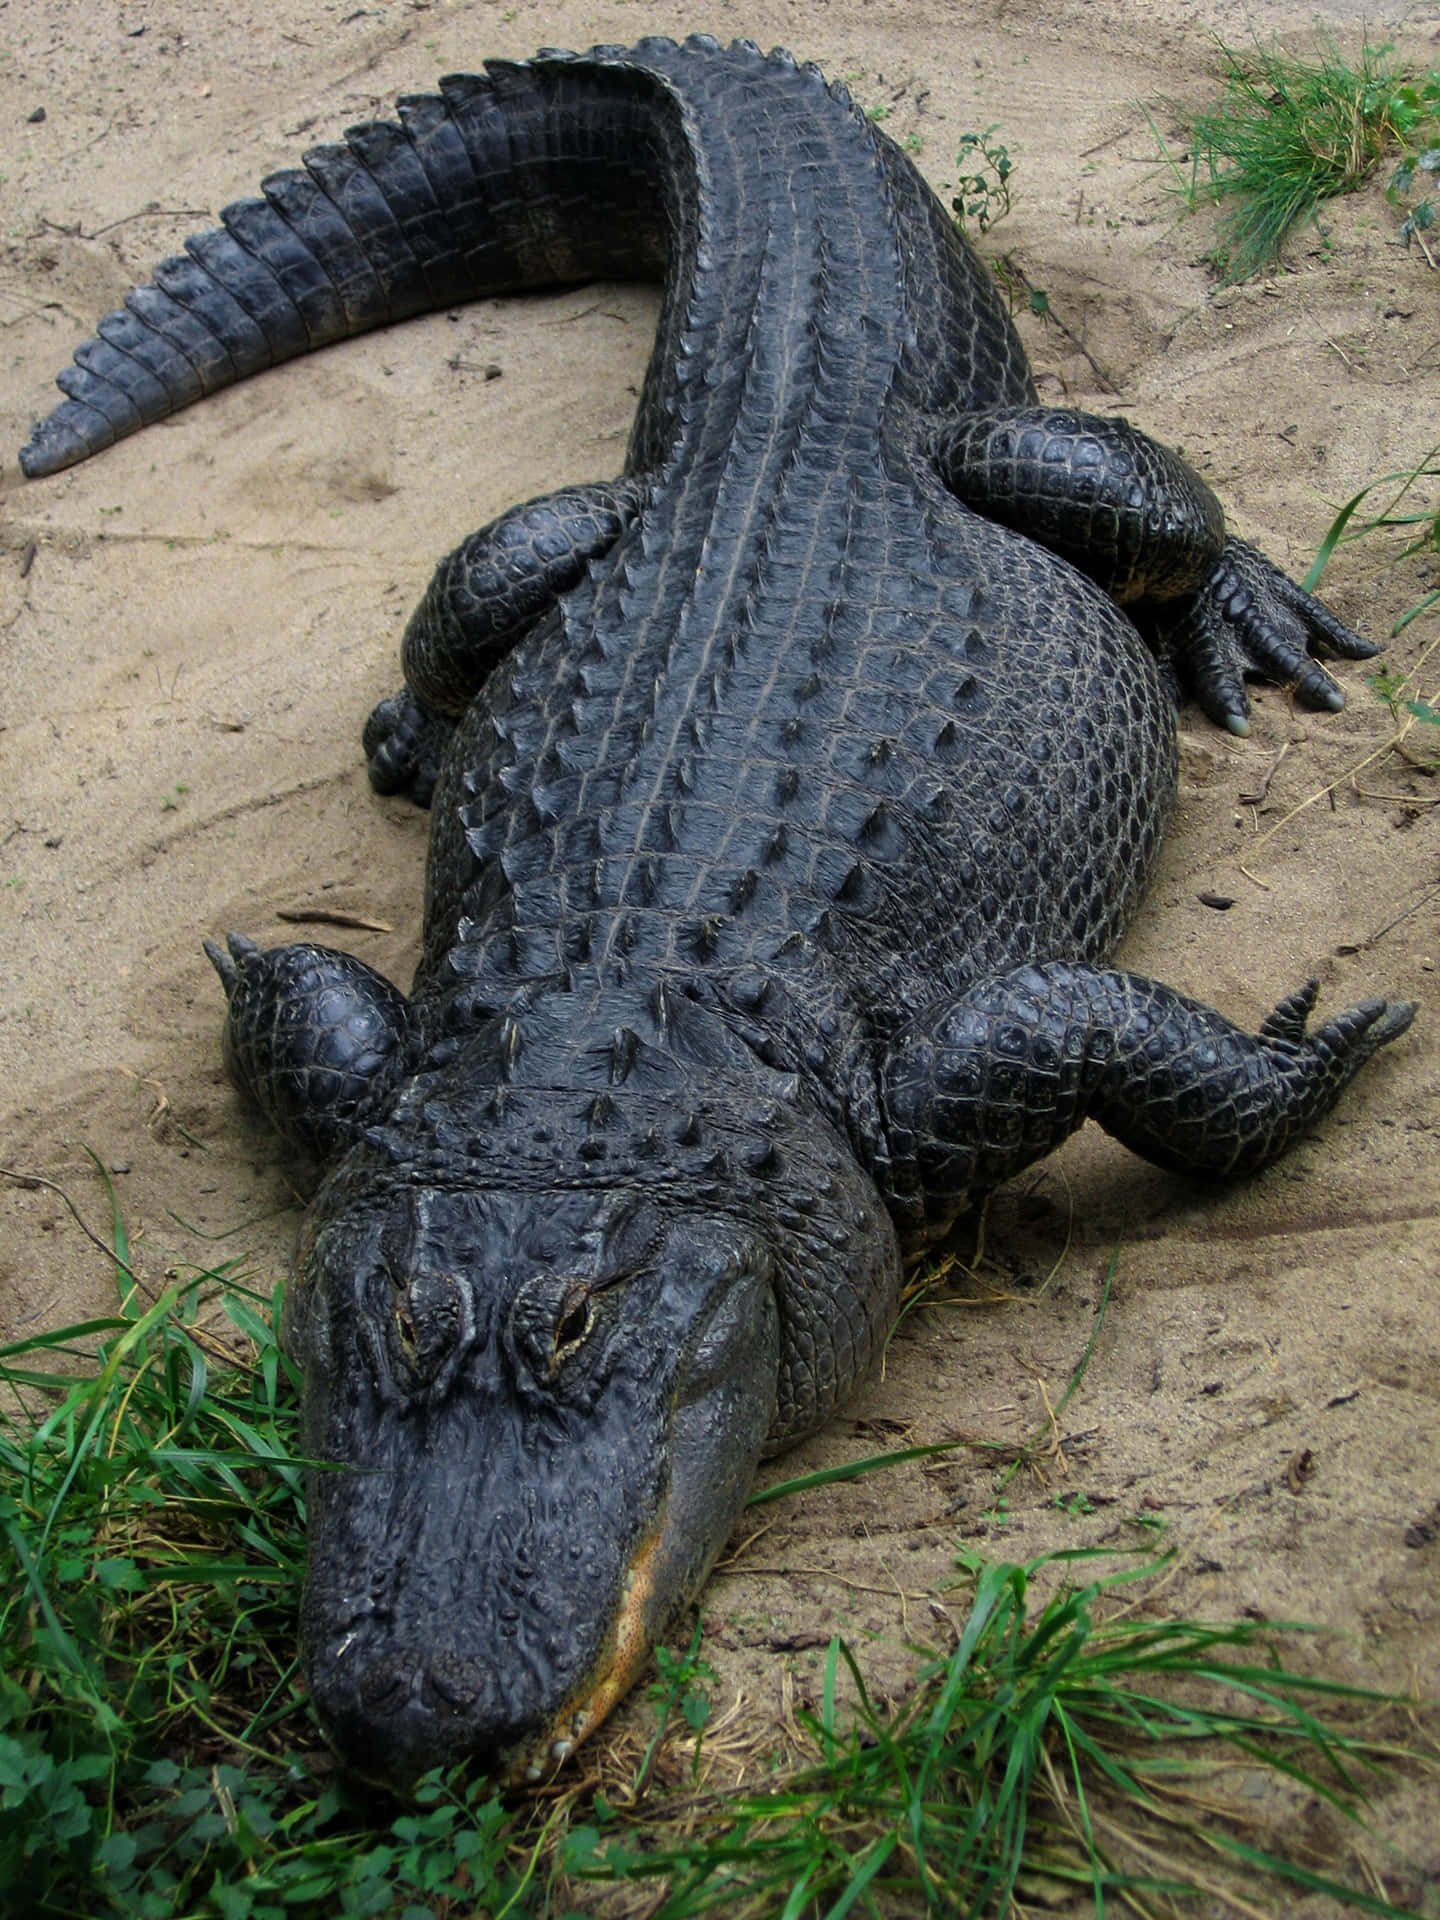 Einalligator Schwimmt Durch Sumpfiges Wasser.